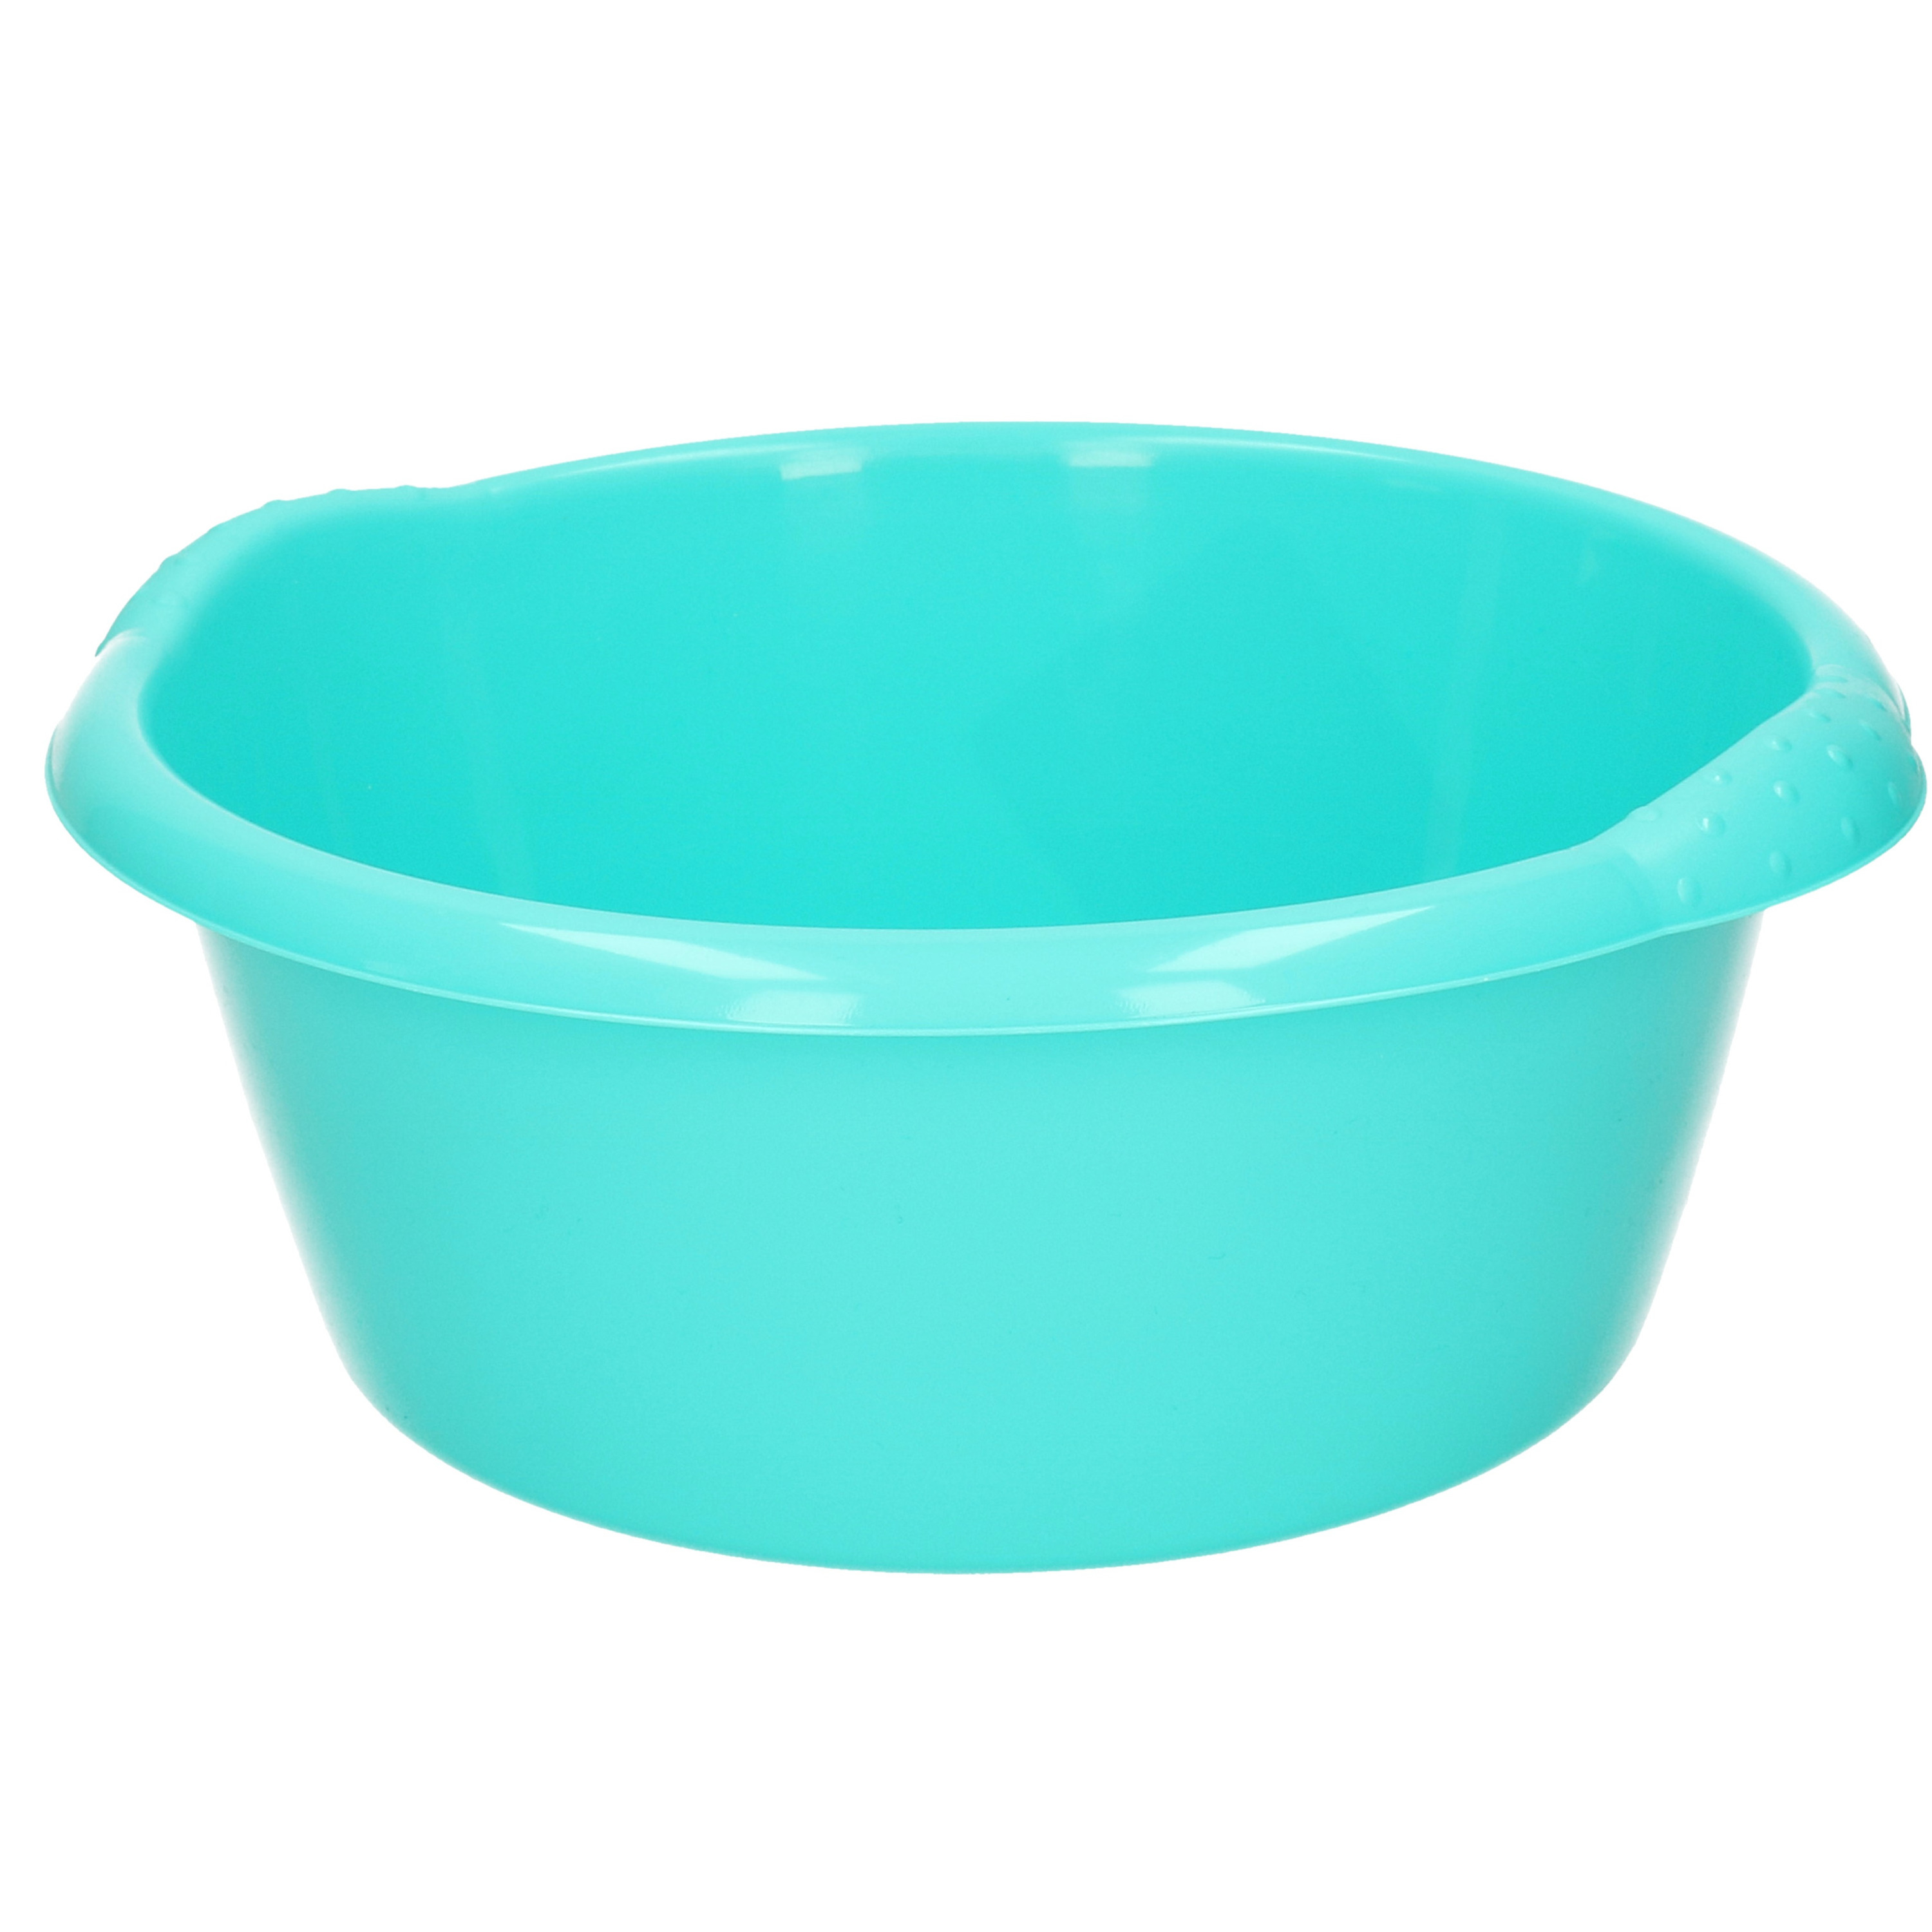 Ronde afwasteil/afwasbak turquoise blauw 3 liter 25 x 10,5 cm -